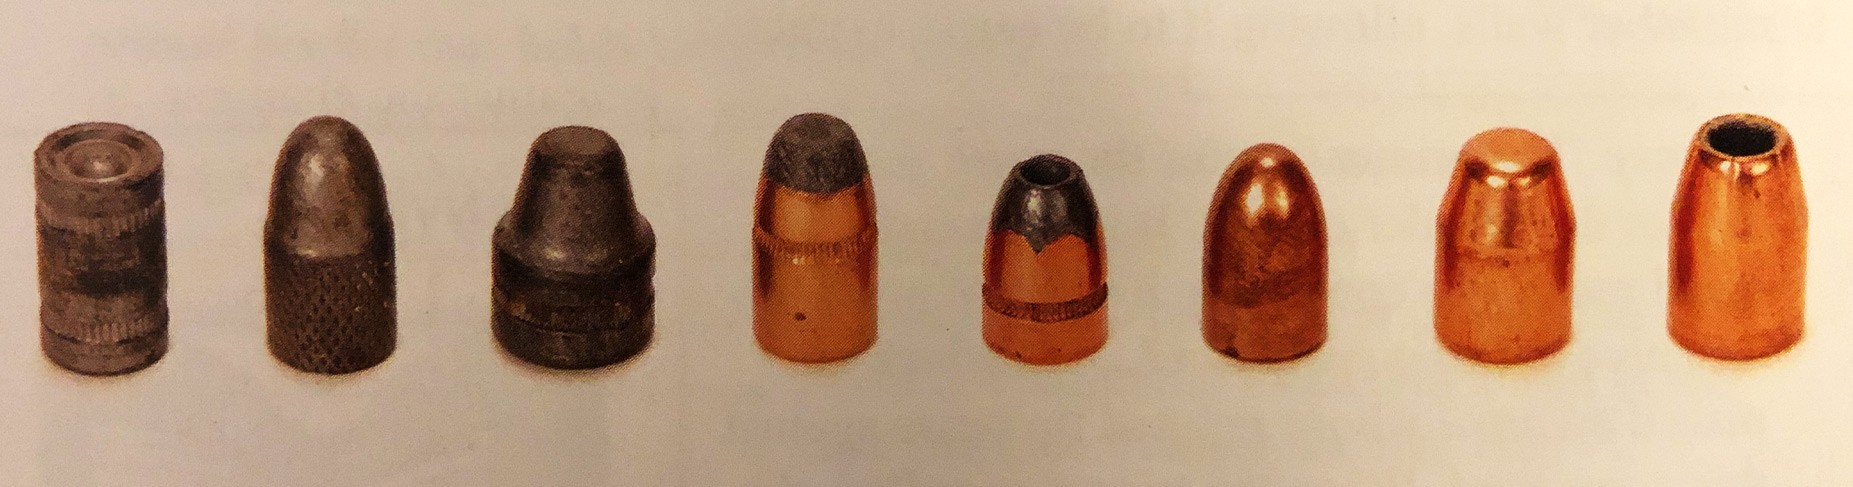 Pistol bullets